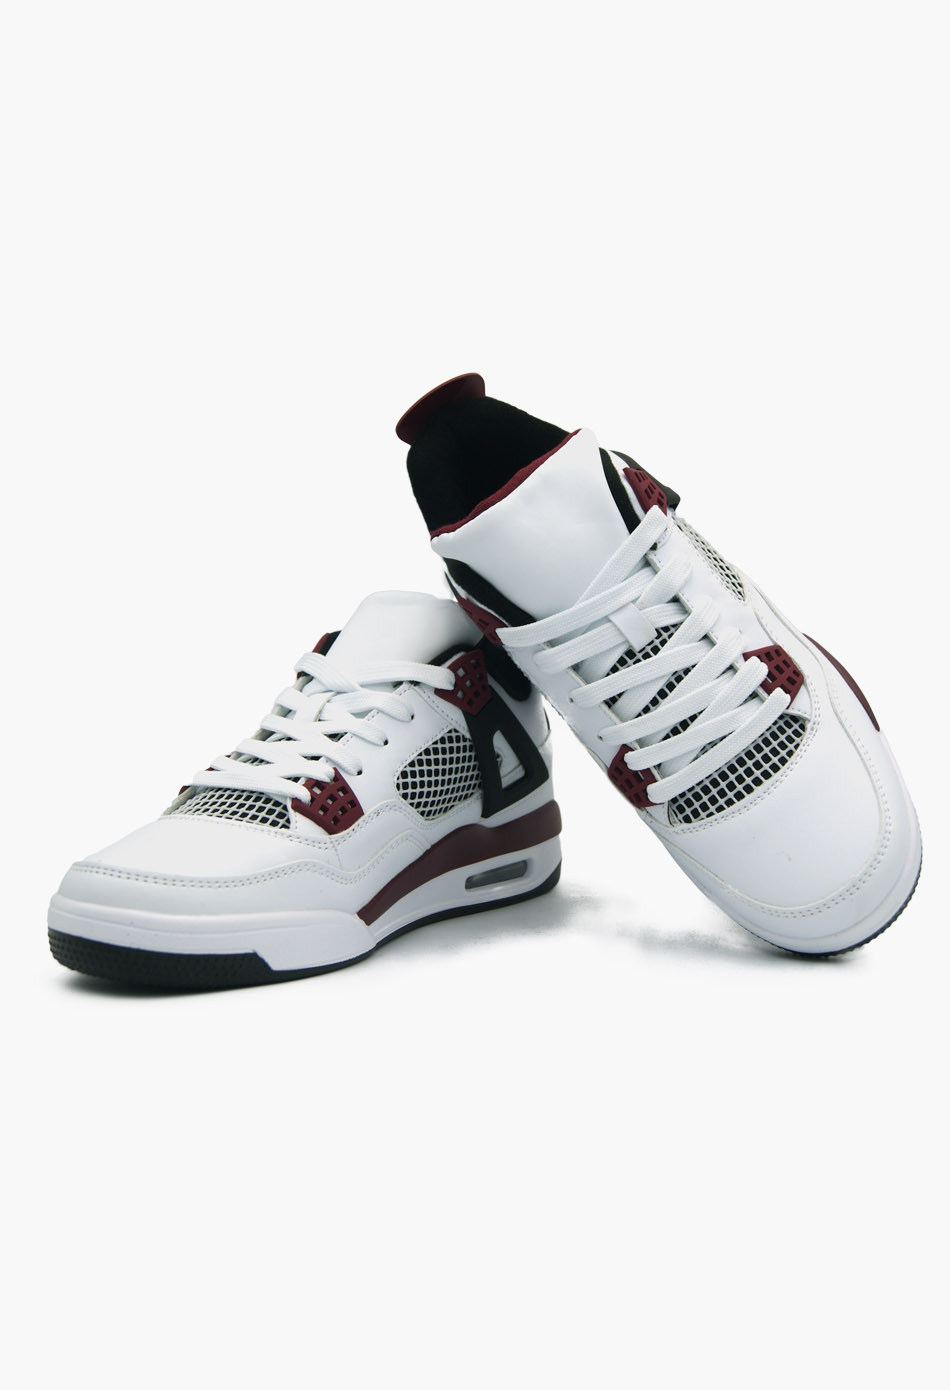 Ανδρικά Αθλητικά Παπούτσια για Τρέξιμο Λευκό / M-3349-white/red ΑΘΛΗΤΙΚΑ & SNEAKERS joya.gr